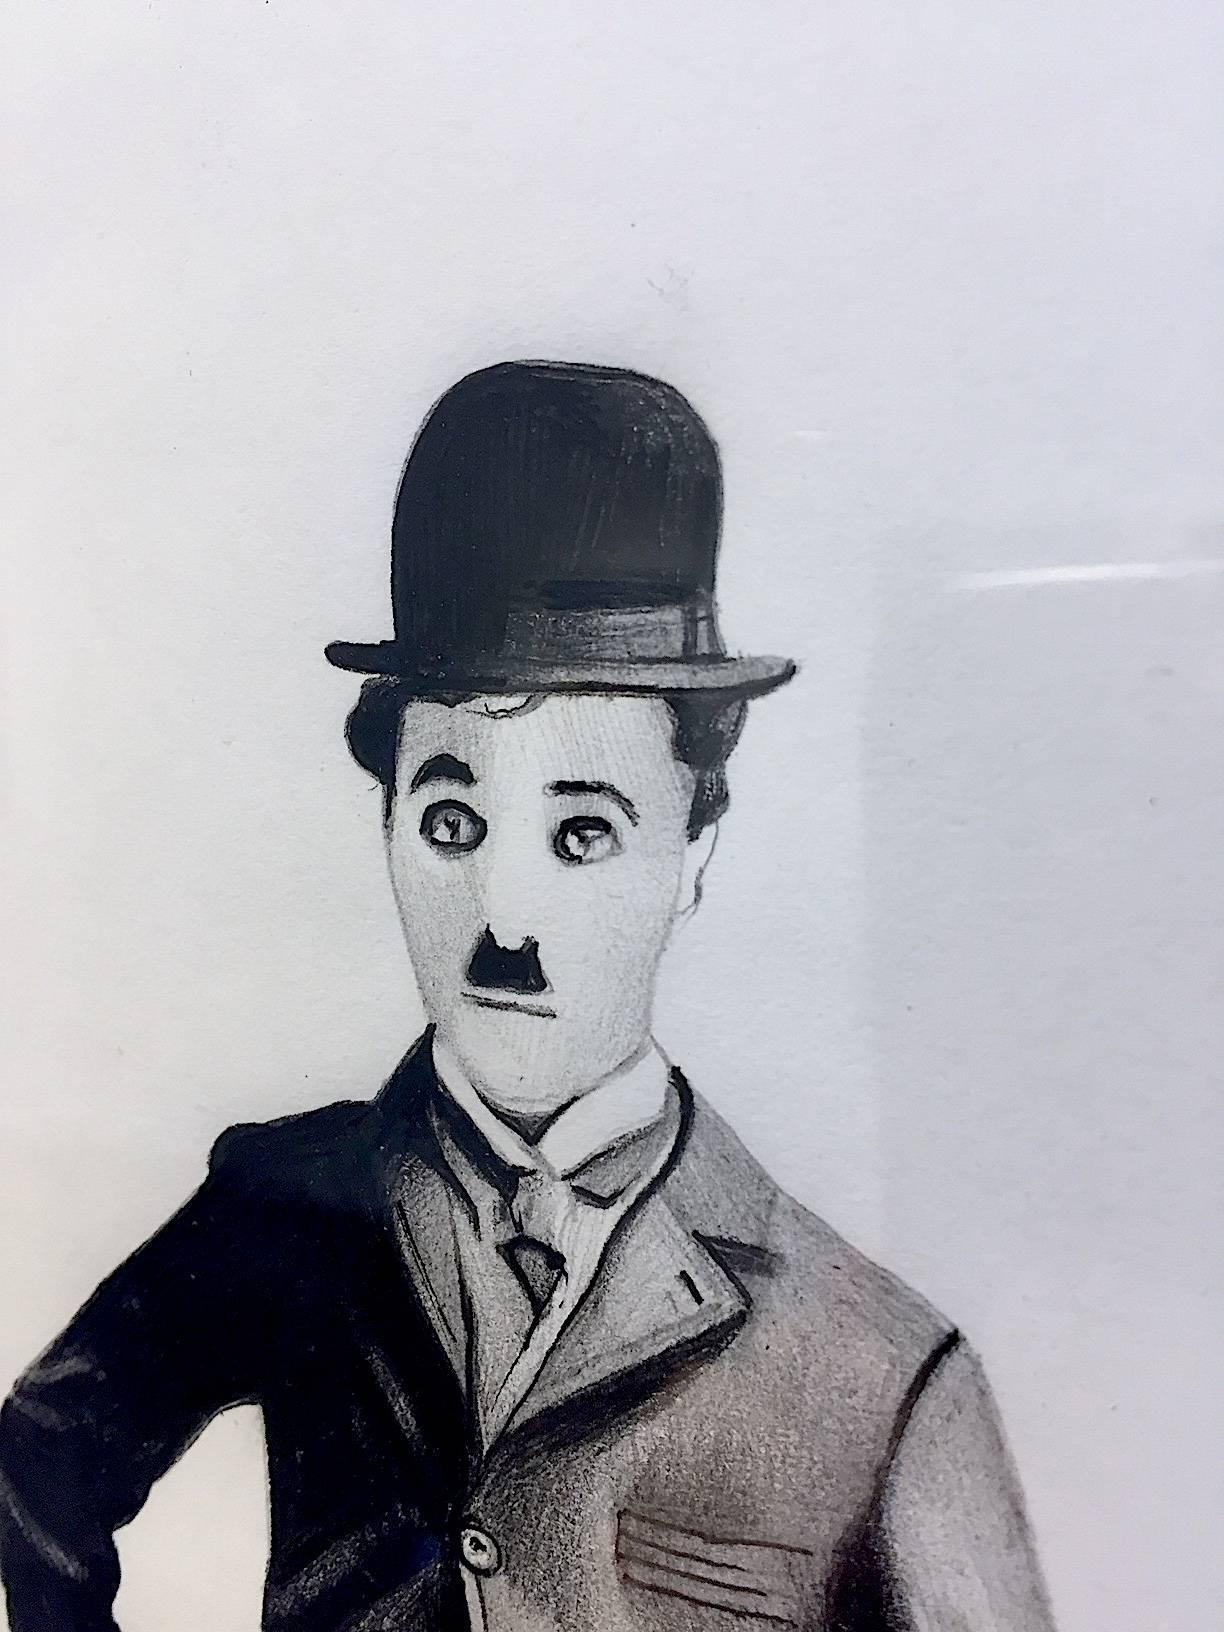 Chaplin shopping (framed in black) - Art by Zoe Moss